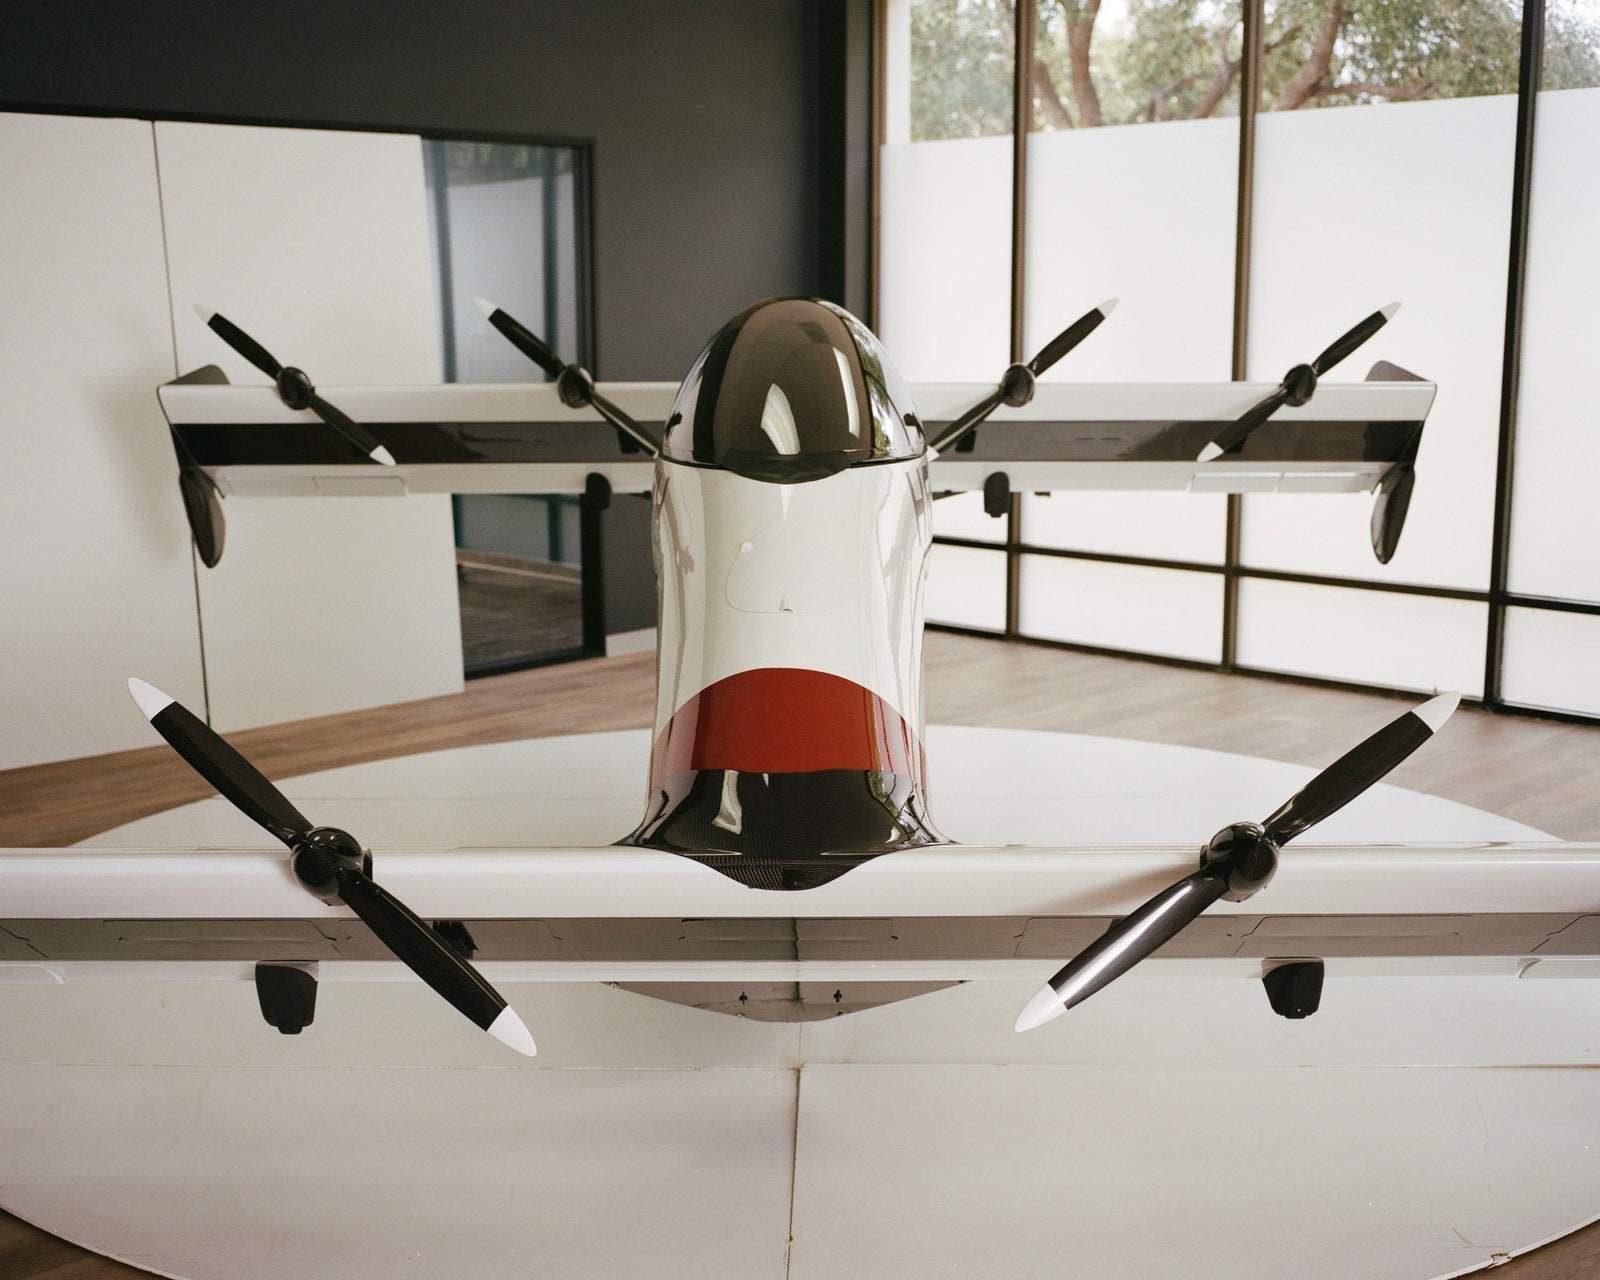 米国カリフォルニア州パロアルトにあるPivotal本社のロビーに展示された、単座の軽型eVTOL機Helix。